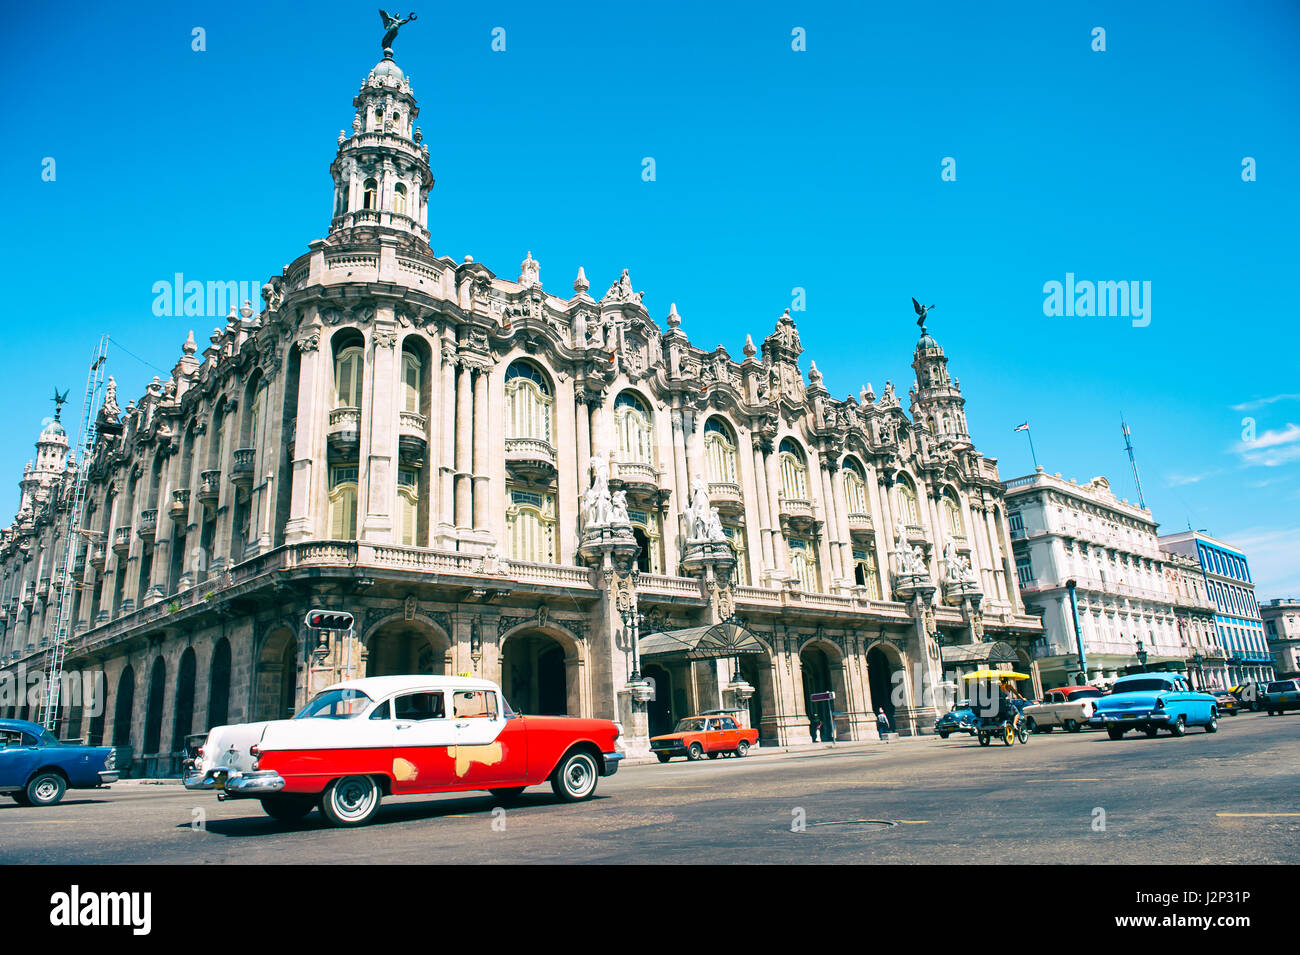 La Habana - Junio 14, 2011: los coches clásicos americanos que sirve como unidad de taxis en frente de una vista brillante de la histórica Gran Teatro de La Habana. Foto de stock